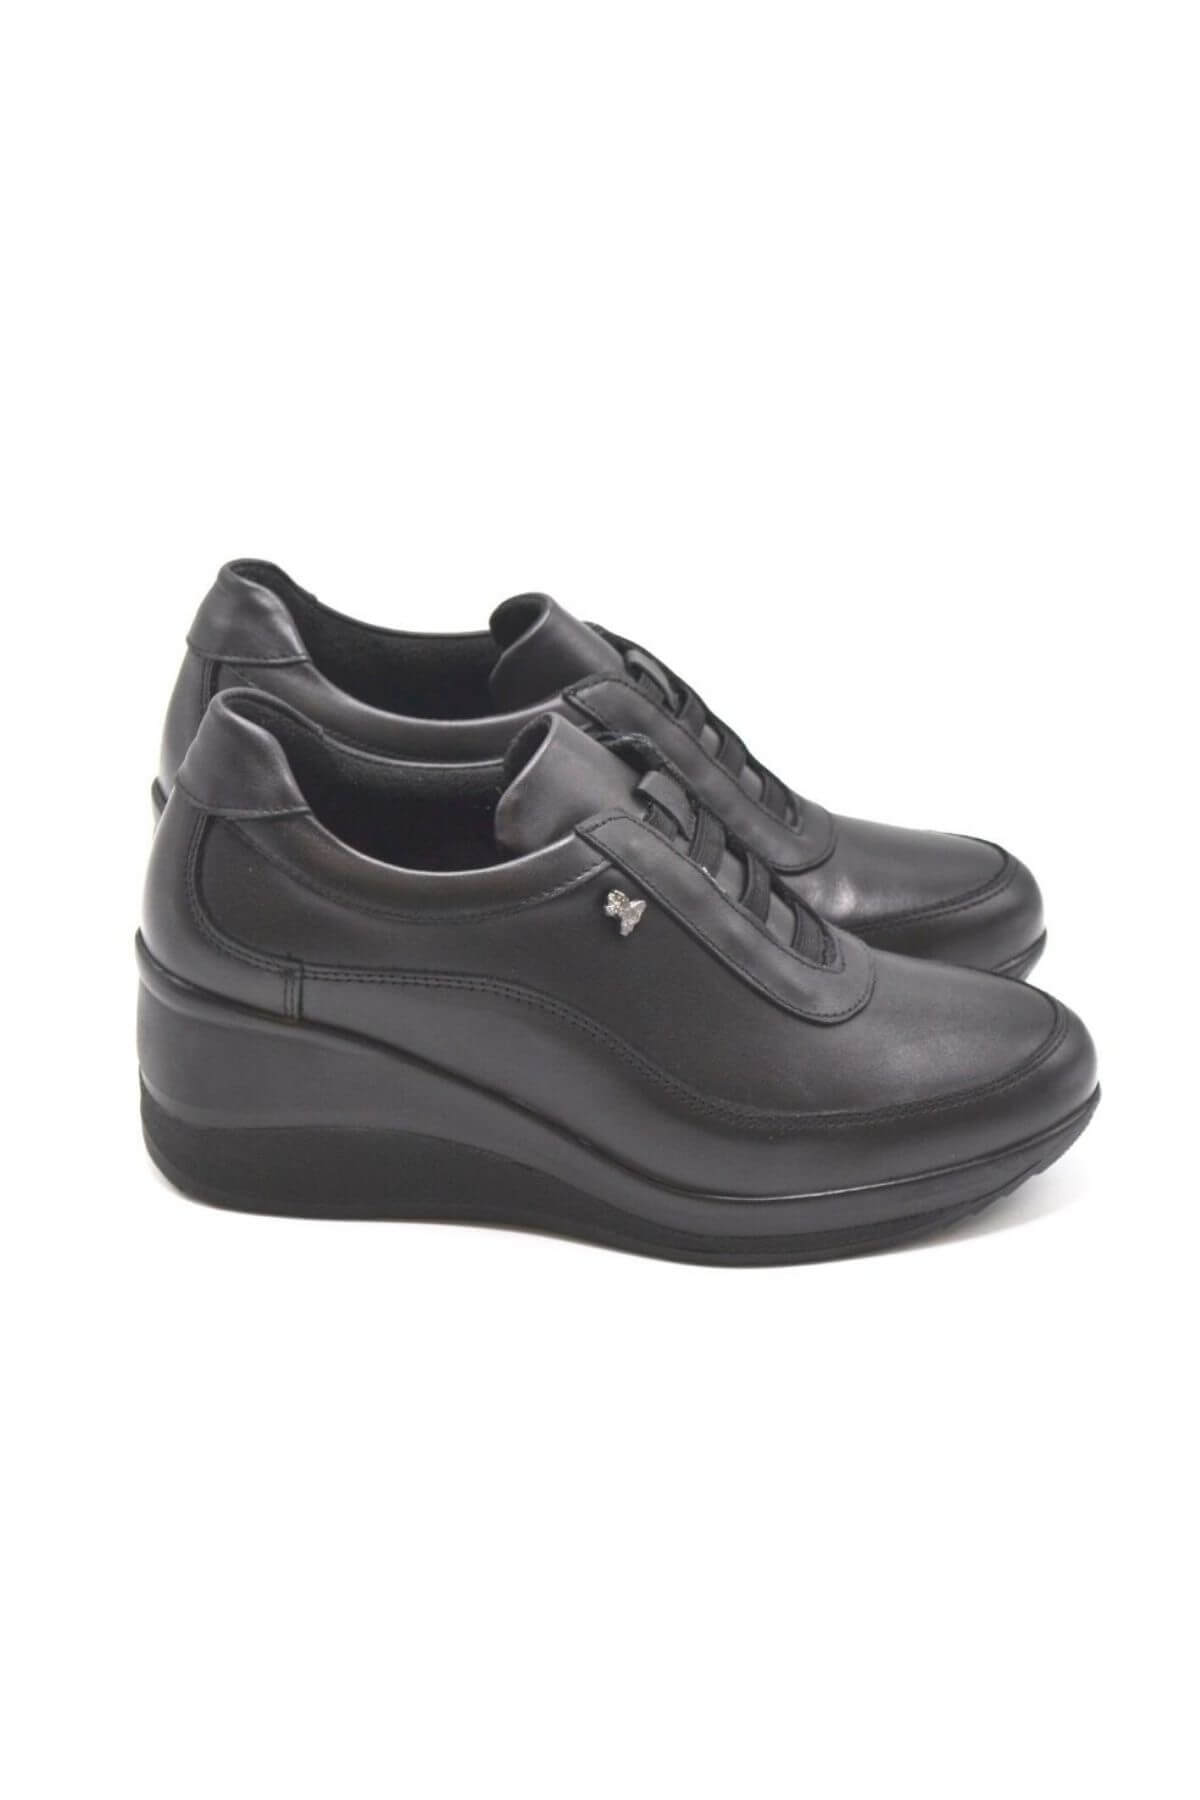 Kadın Dolgu Topuk Deri Ayakkabı Siyah 2111520K - Thumbnail